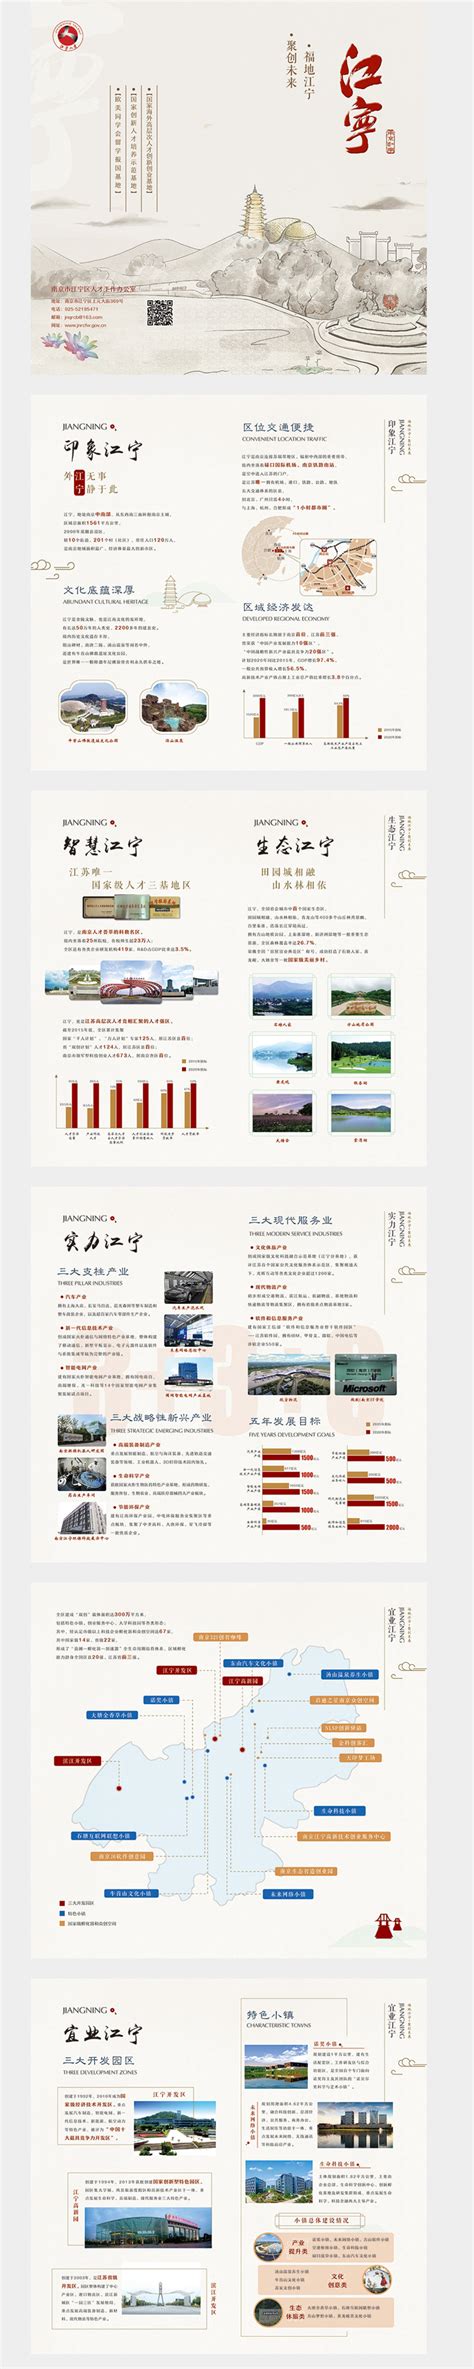 南京vi设计公司-南京专业企业vi形象设计公司 - 麦奇品牌策略设计